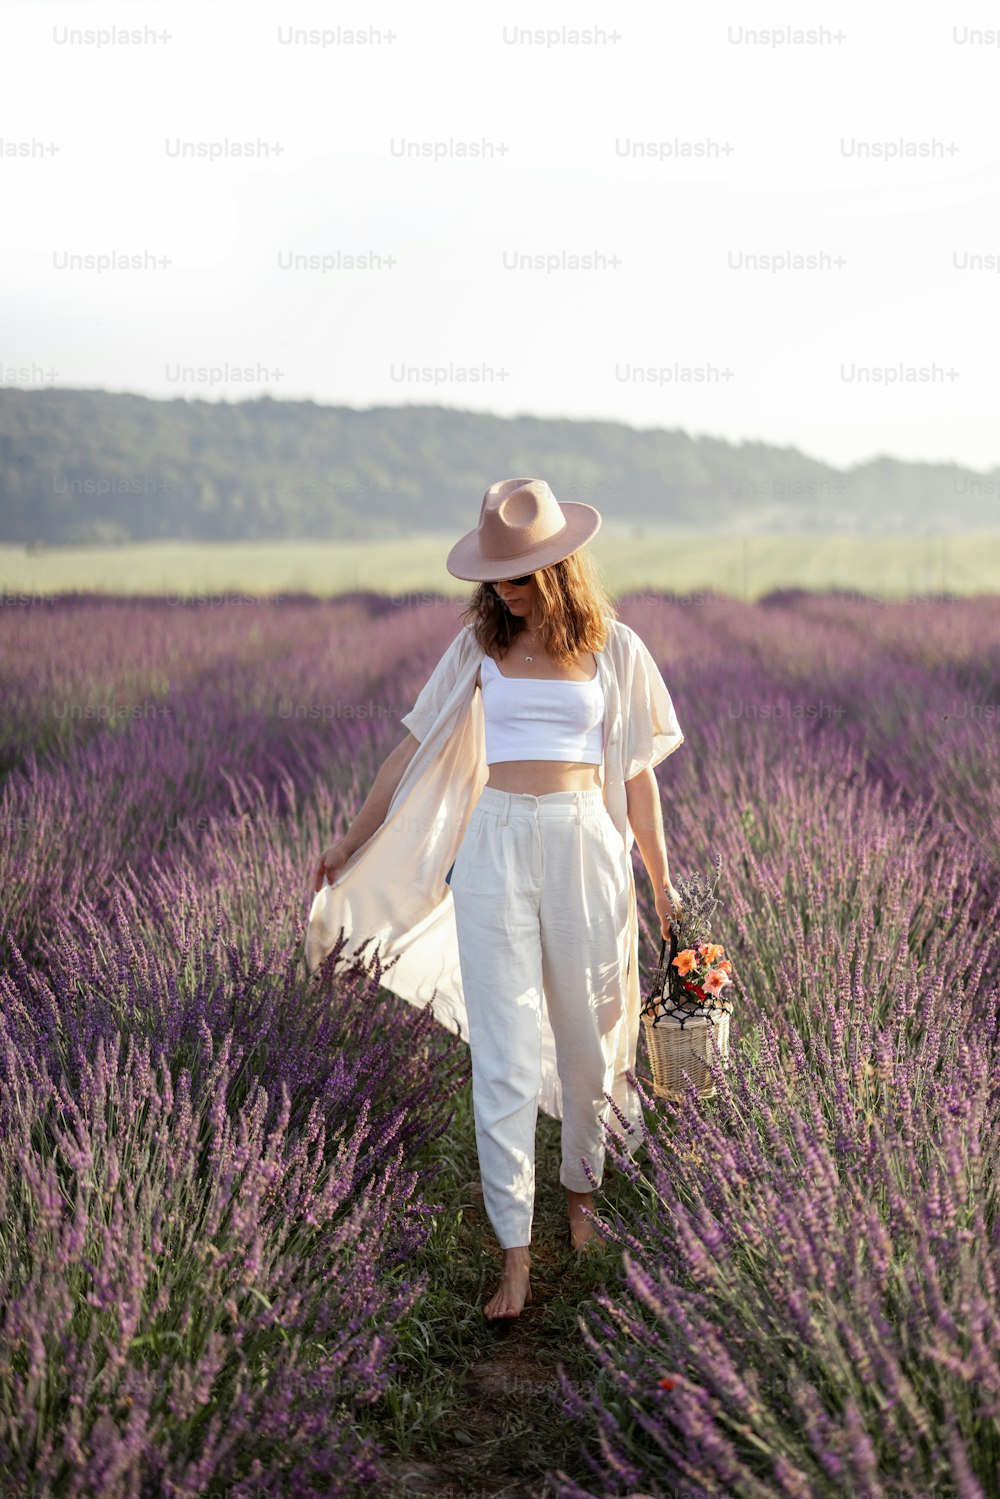 Mujer joven que camina en el campo de lavanda con ramo de flores violetas y disfruta de la belleza de la naturaleza. Calma y concepto consciente. Espacio de copia